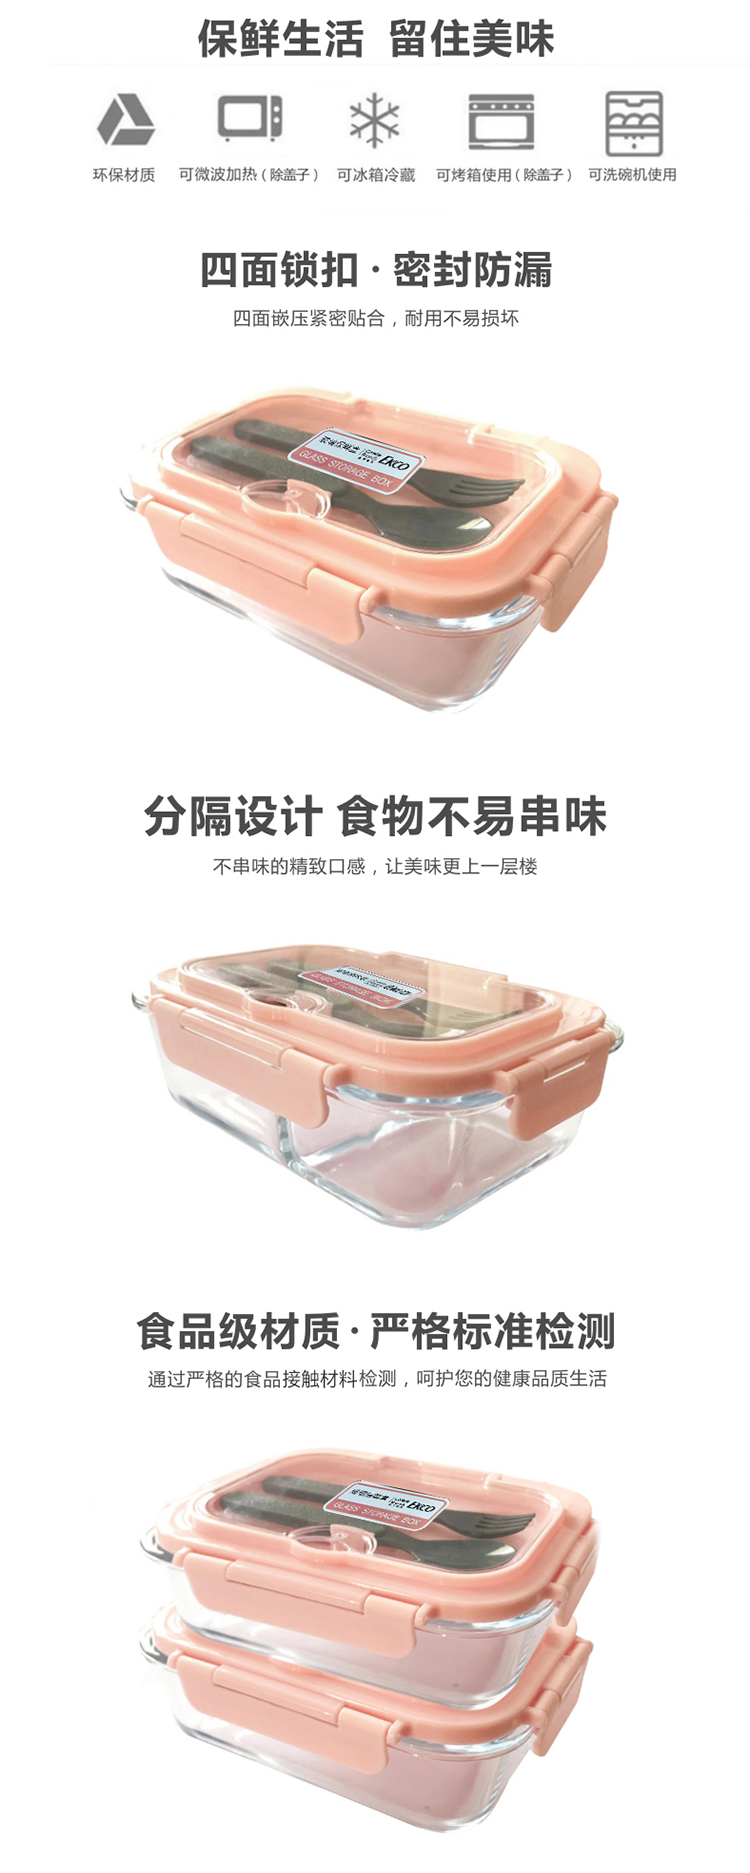 康宁/VISONS 康宁琥珀色玻璃保鲜盒4件组EK-BXH-2Y2F-KZ